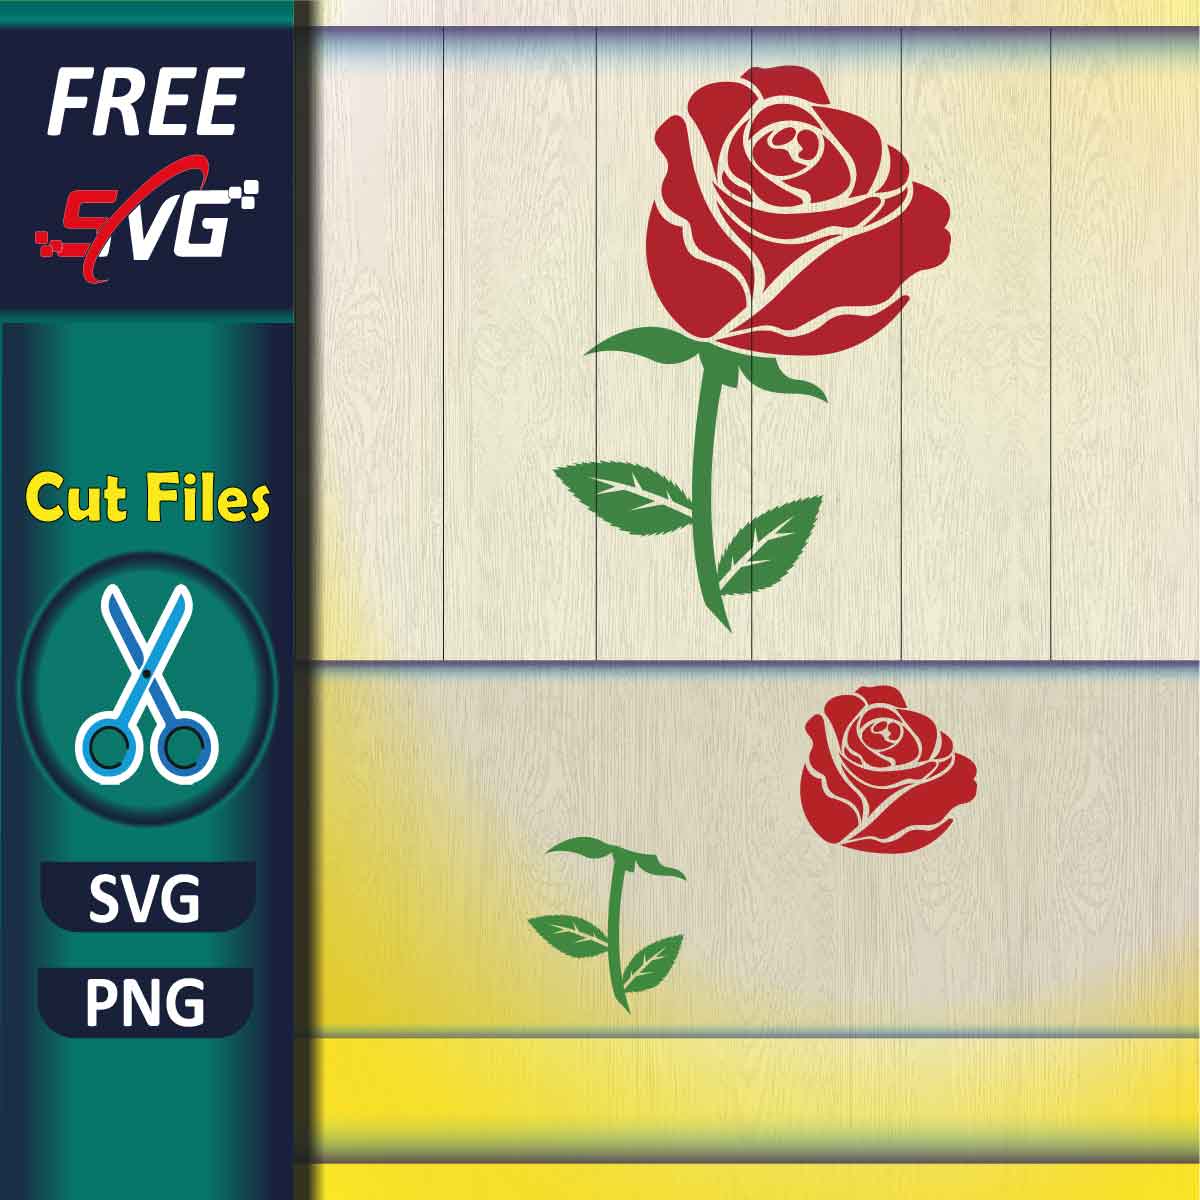 Free Rose Flower Circle Monogram Frame SVG Cut File